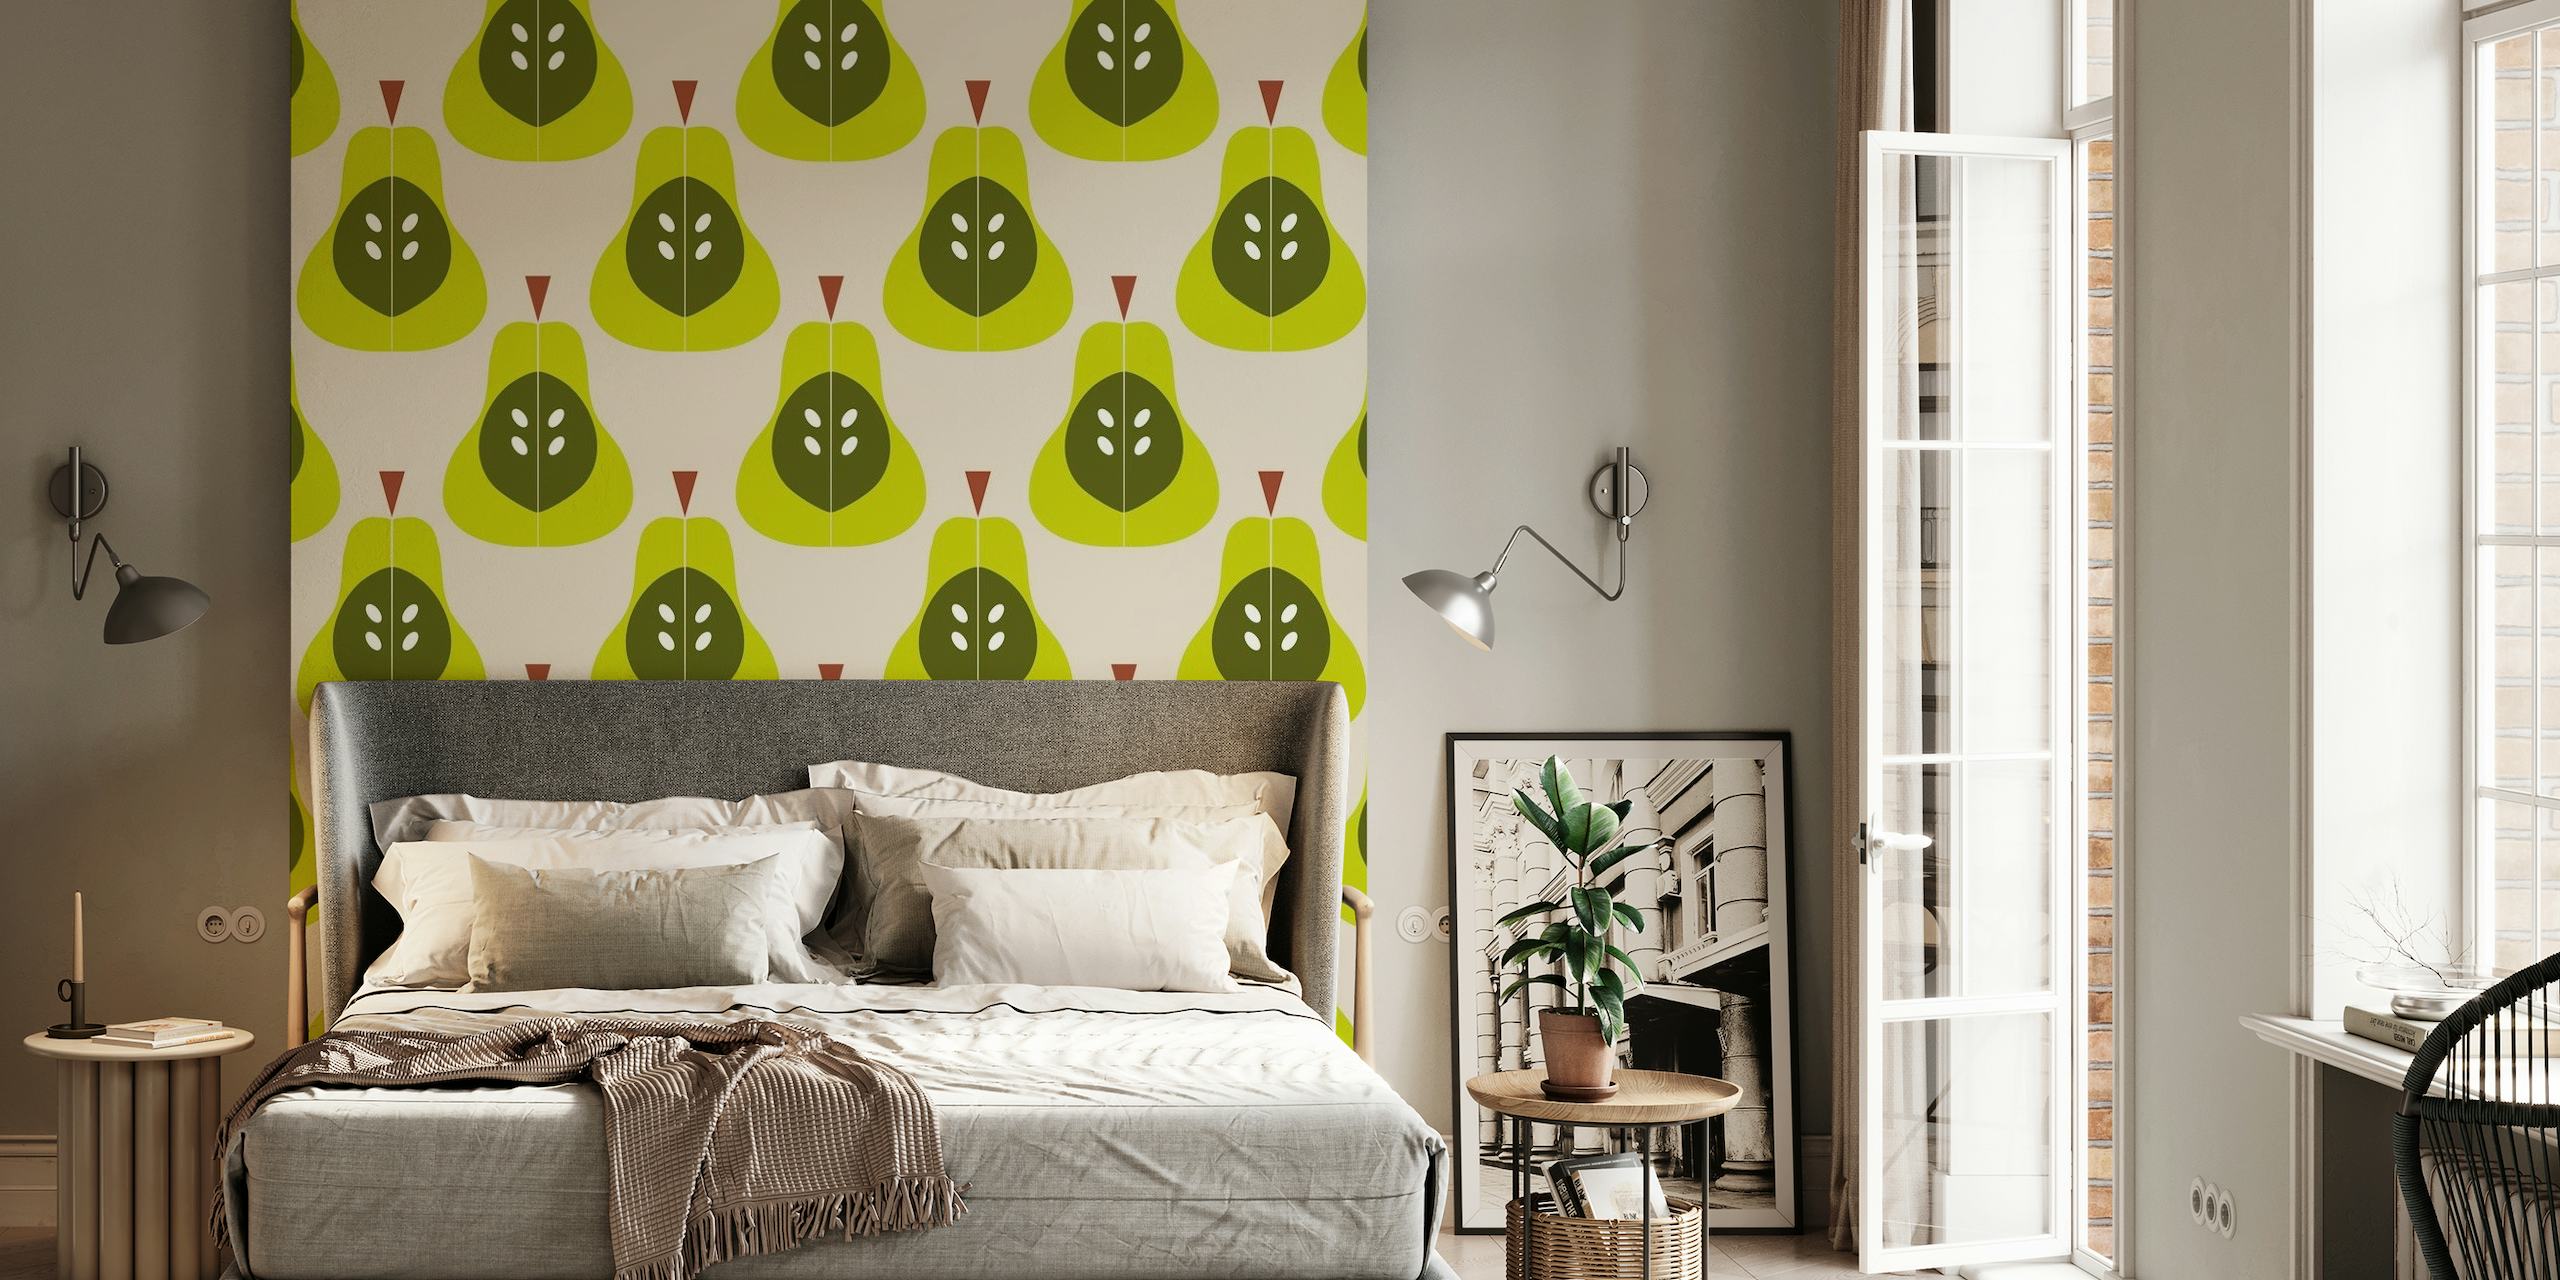 Fototapete „Grüne Birnen“ mit stilisiertem Birnen- und Blattmuster auf neutralem Hintergrund